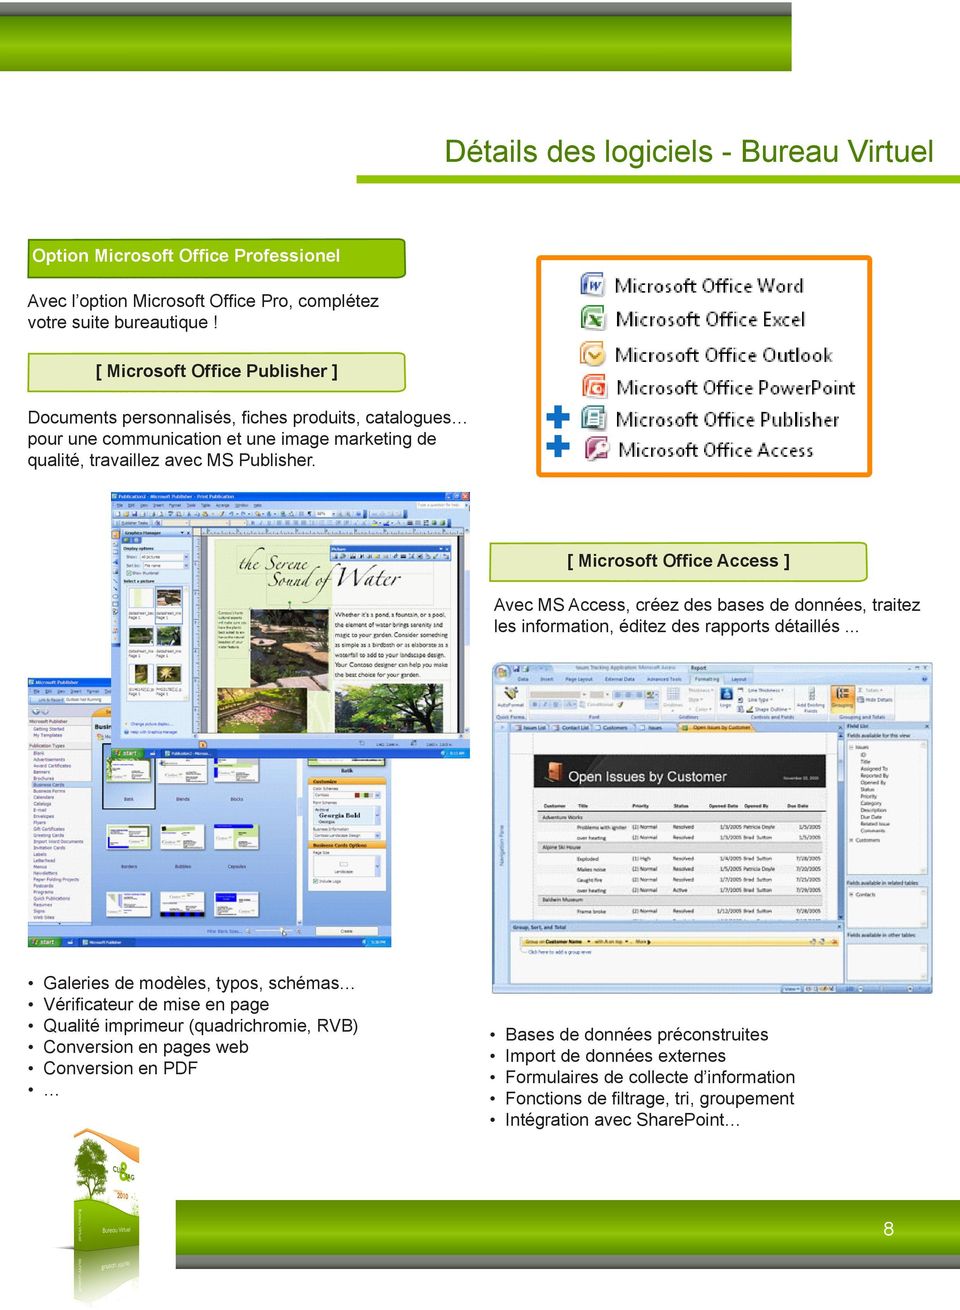 [ Microsoft Office Access ] Avec MS Access, créez des bases de données, traitez les information, éditez des rapports détaillés.